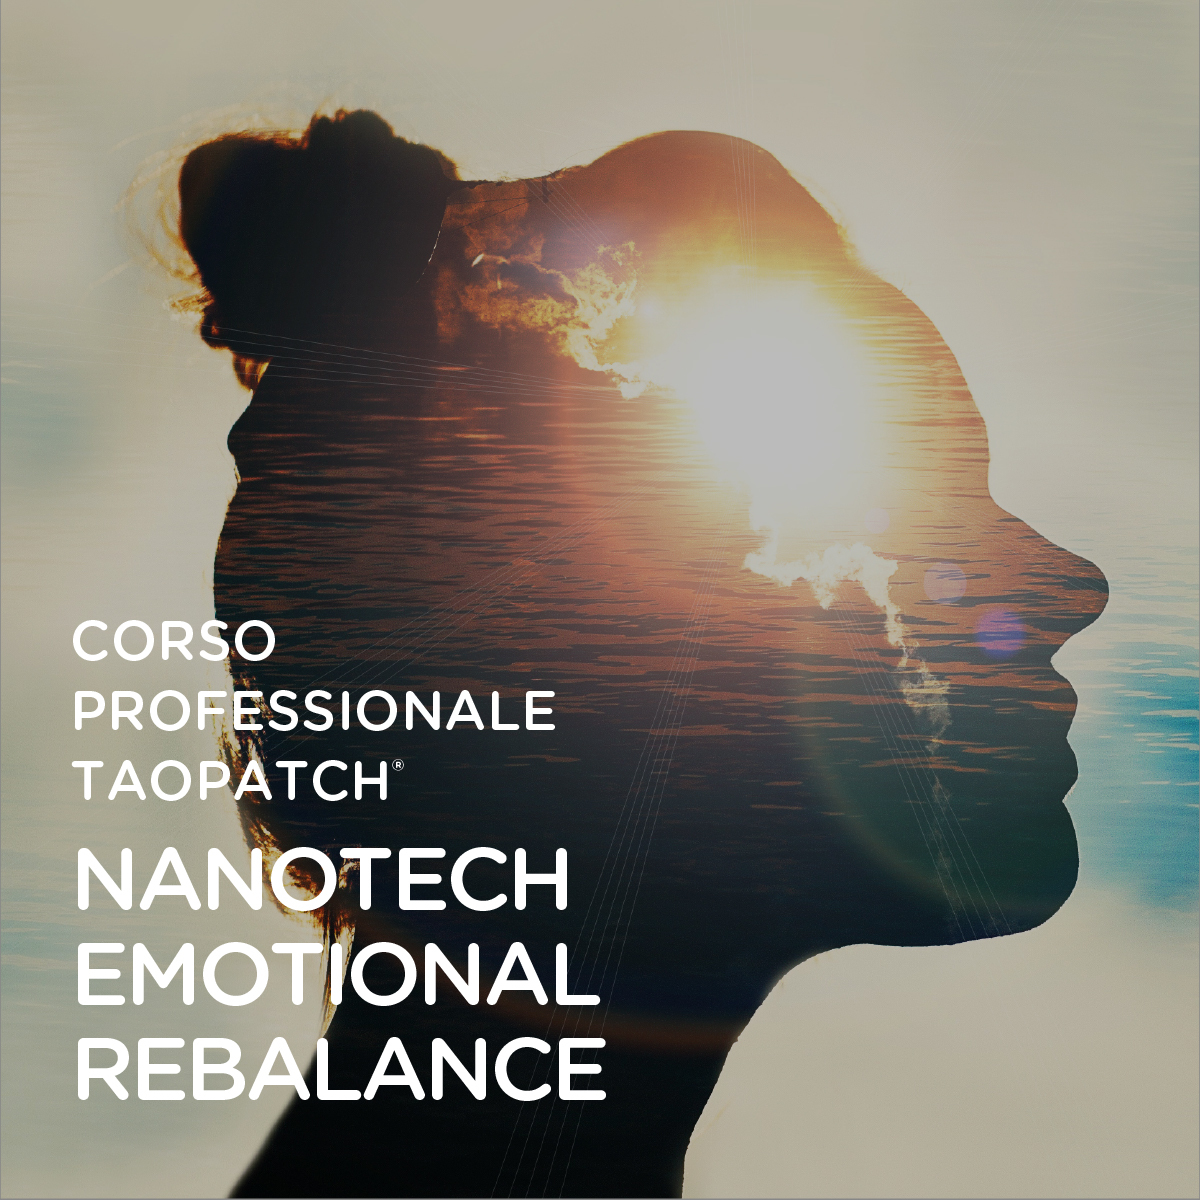 ICO-CORSO NANOTECH EMOTIONAL REBALANCE 2020 A-100